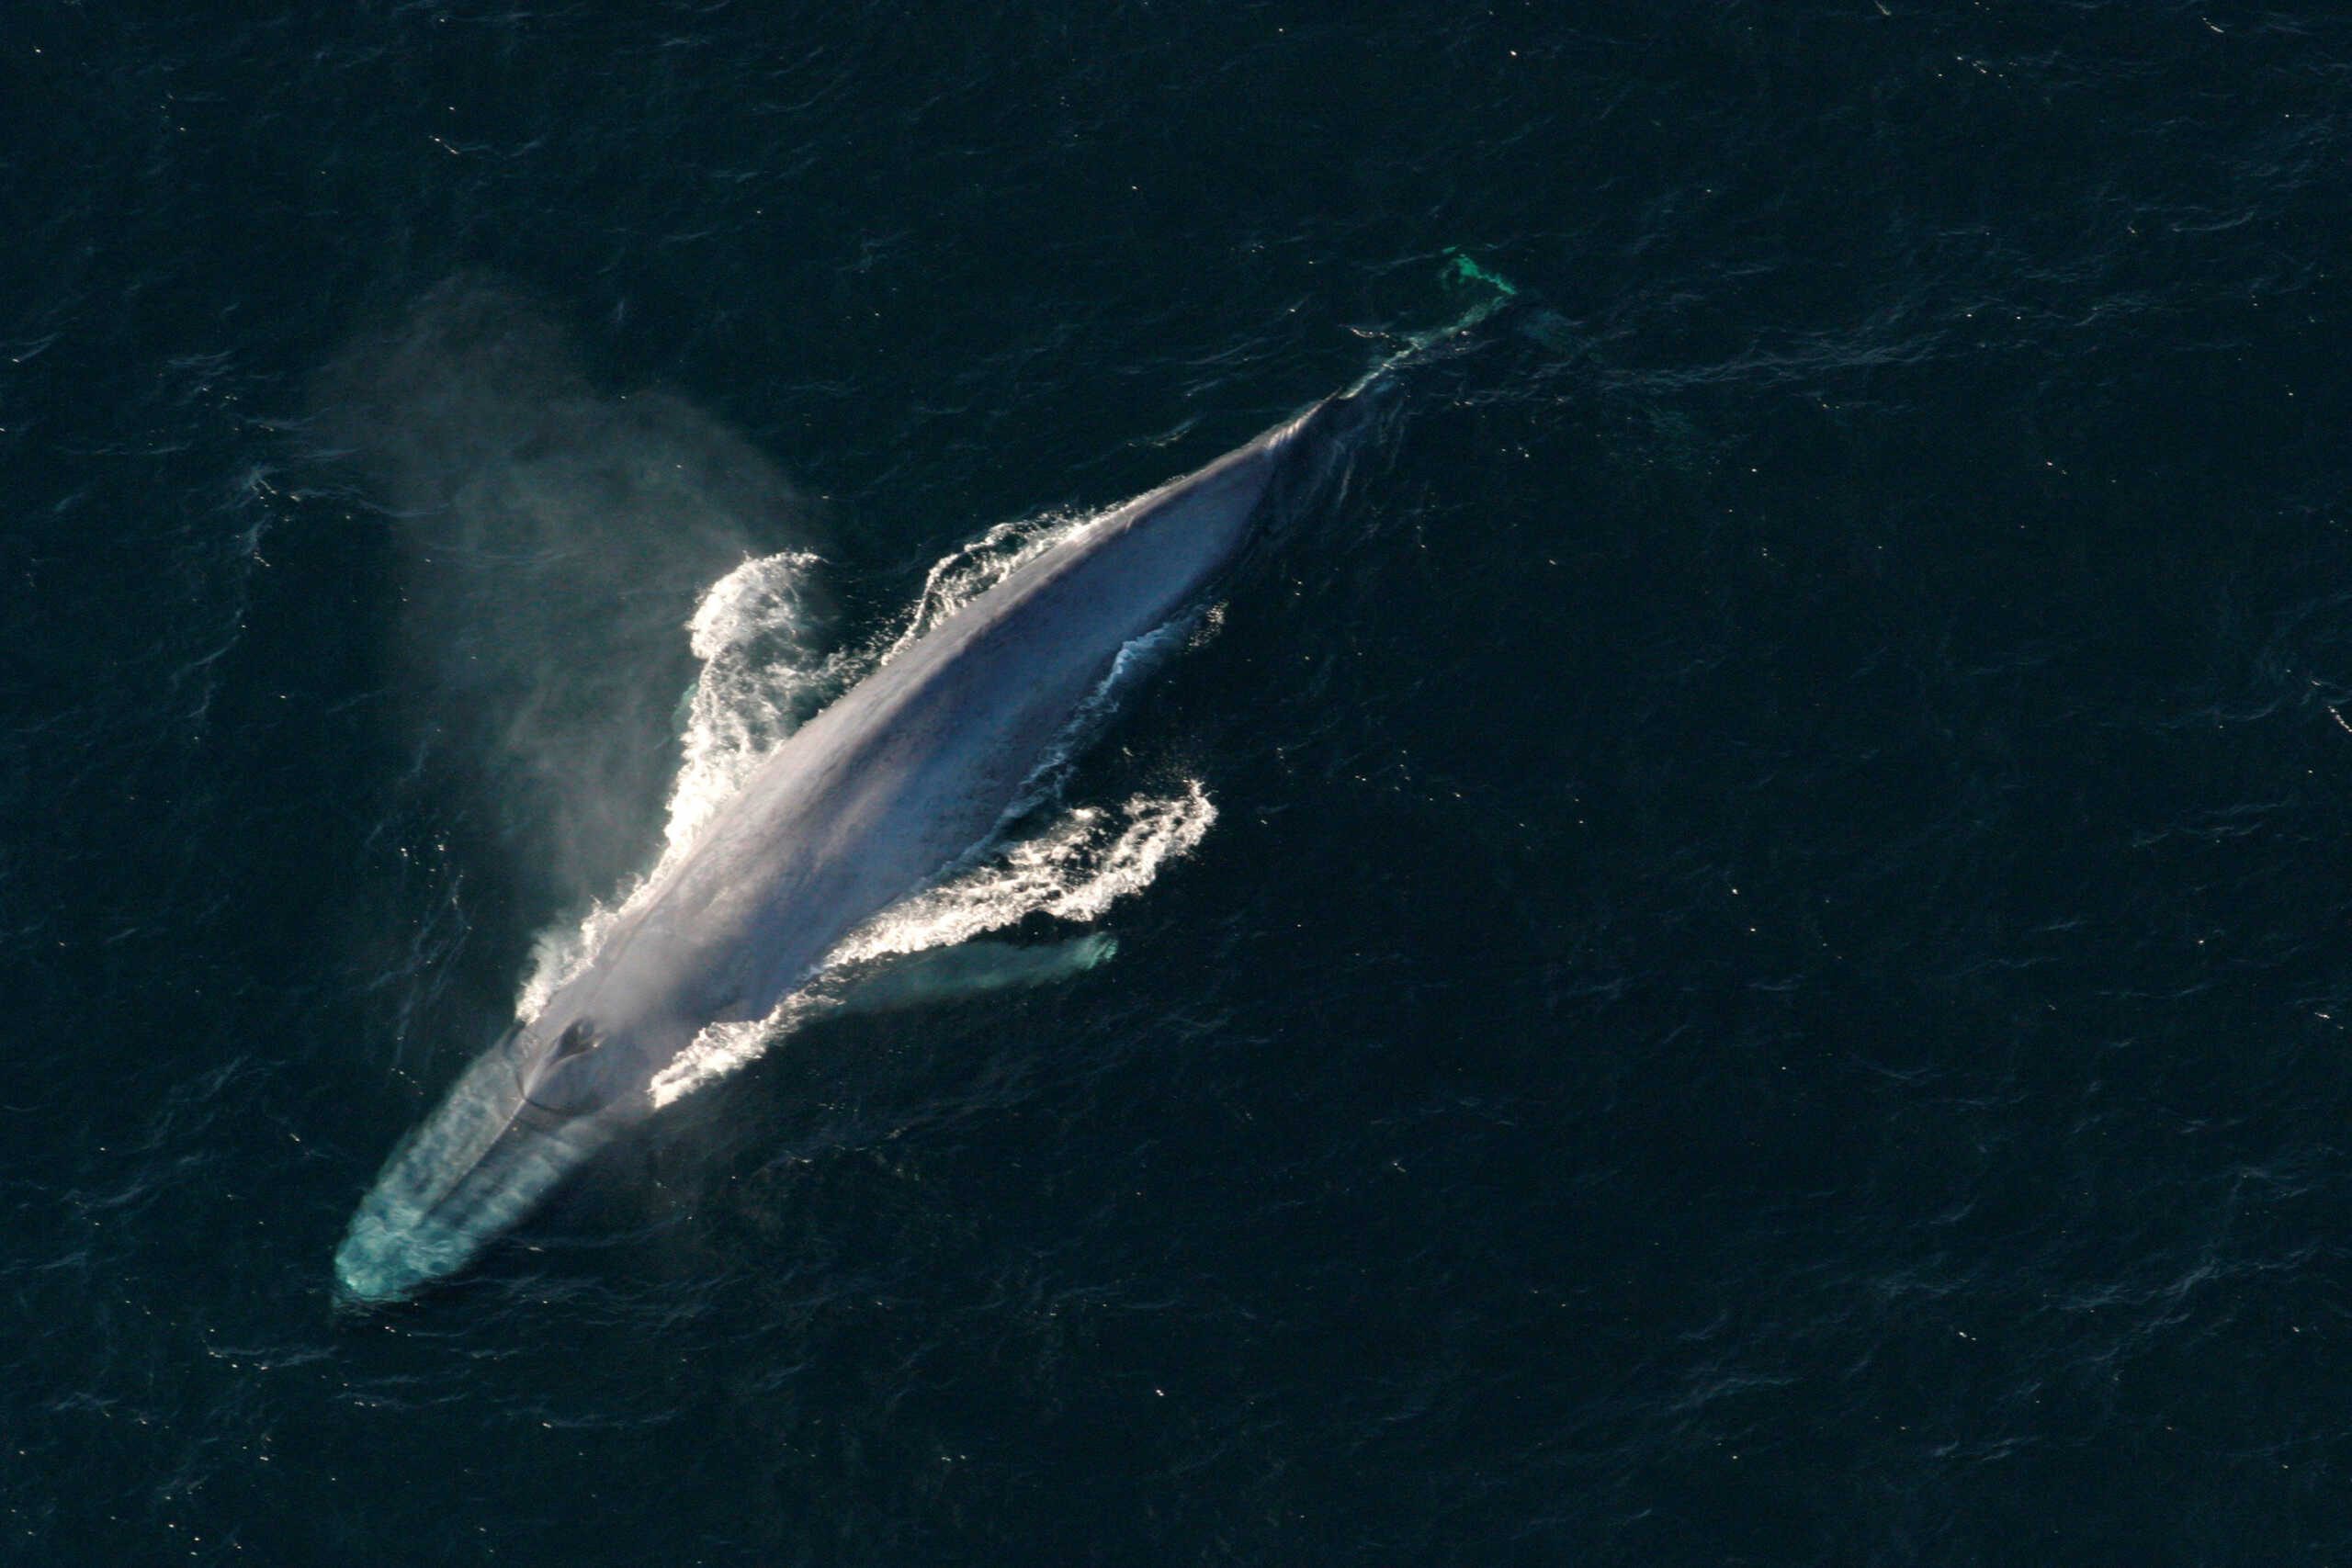 Γαλλία: Σώθηκε η μεγάπτερη φάλαινα που είχε παγιδευτεί σε ποταμό